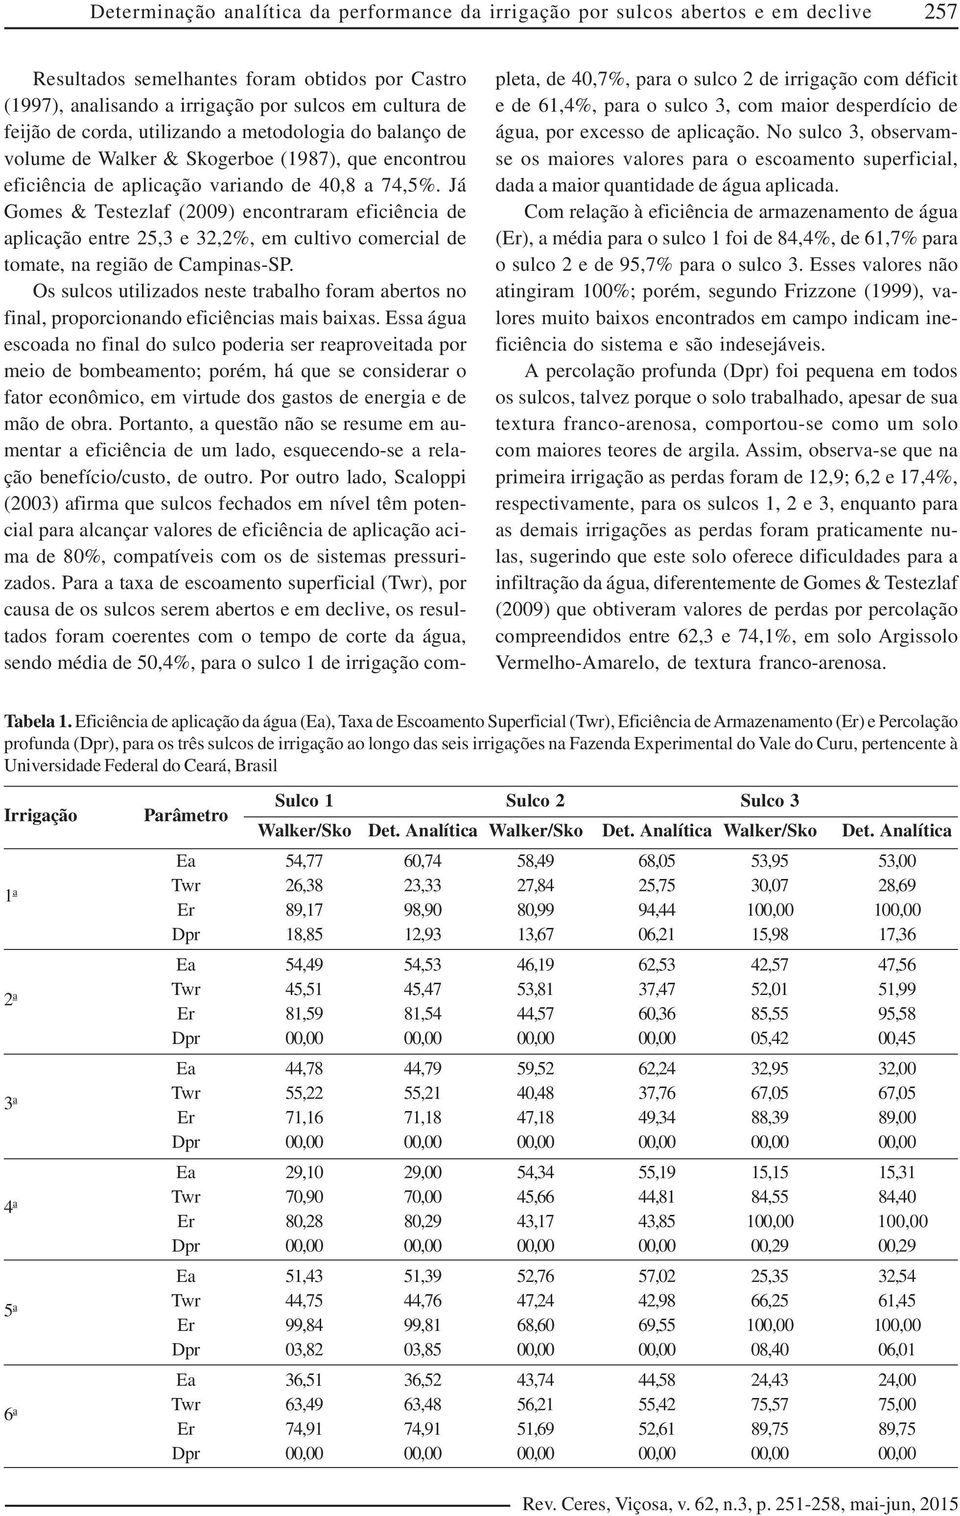 Já Gomes & Testezlaf (2009) encontraram eficiência de aplicação entre 25,3 e 32,2%, em cultivo comercial de tomate, na região de Campinas-SP.